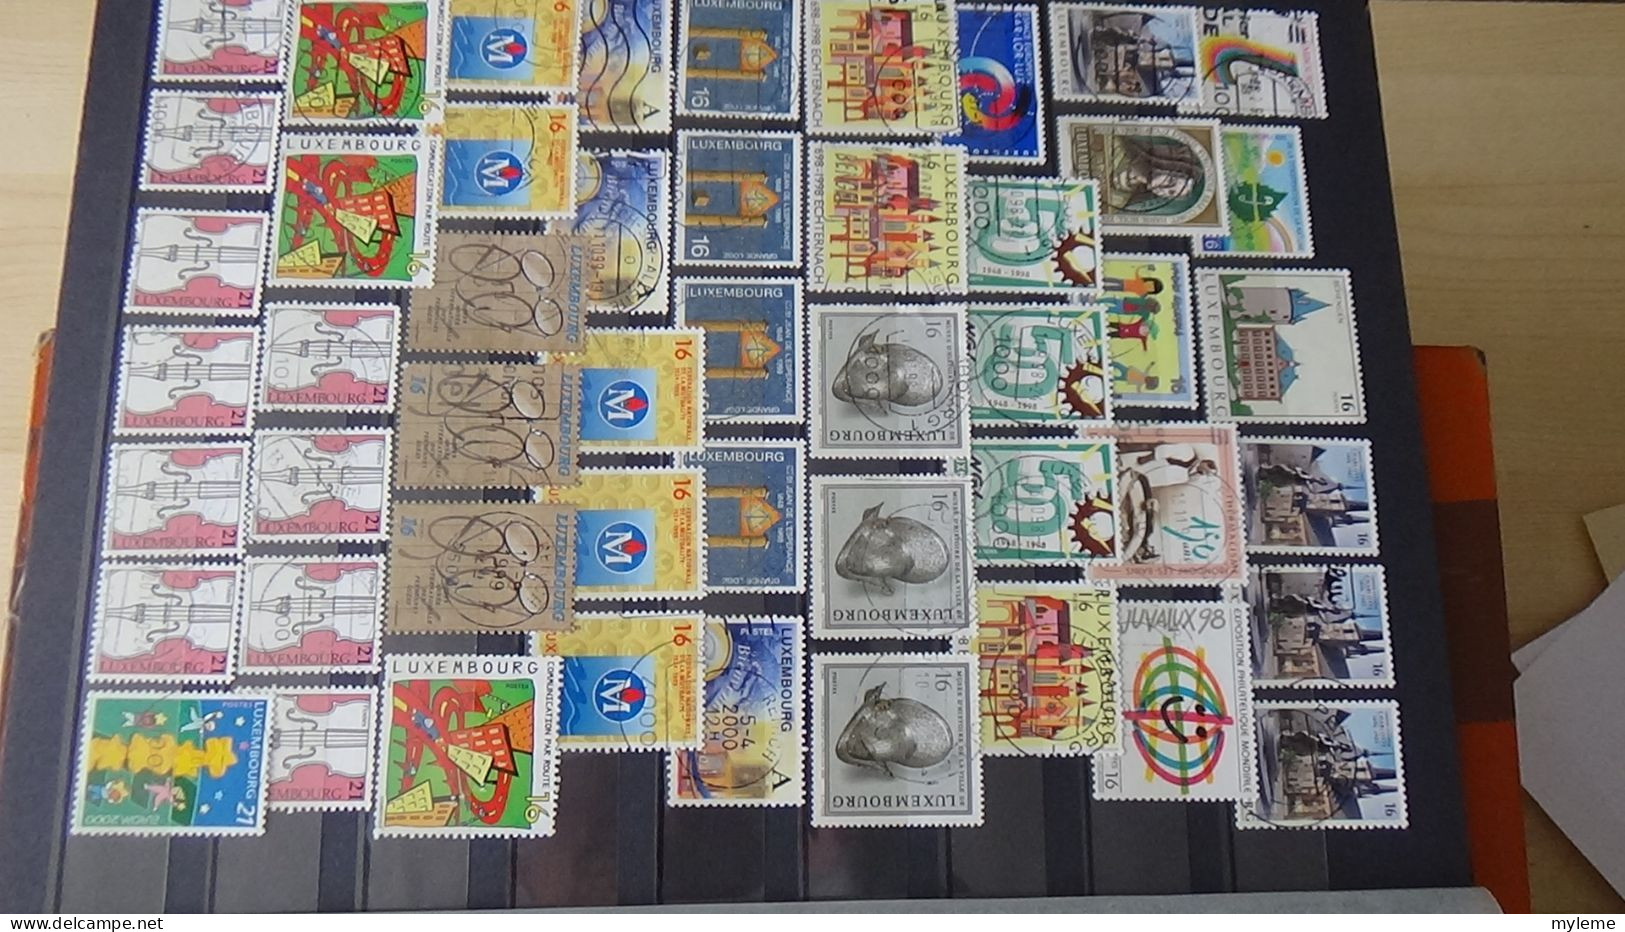 BF49 Bel ensemble de timbres de divers pays dont N° 258 + 259 + 260 ** Cote 320 euros. A saisir !!!